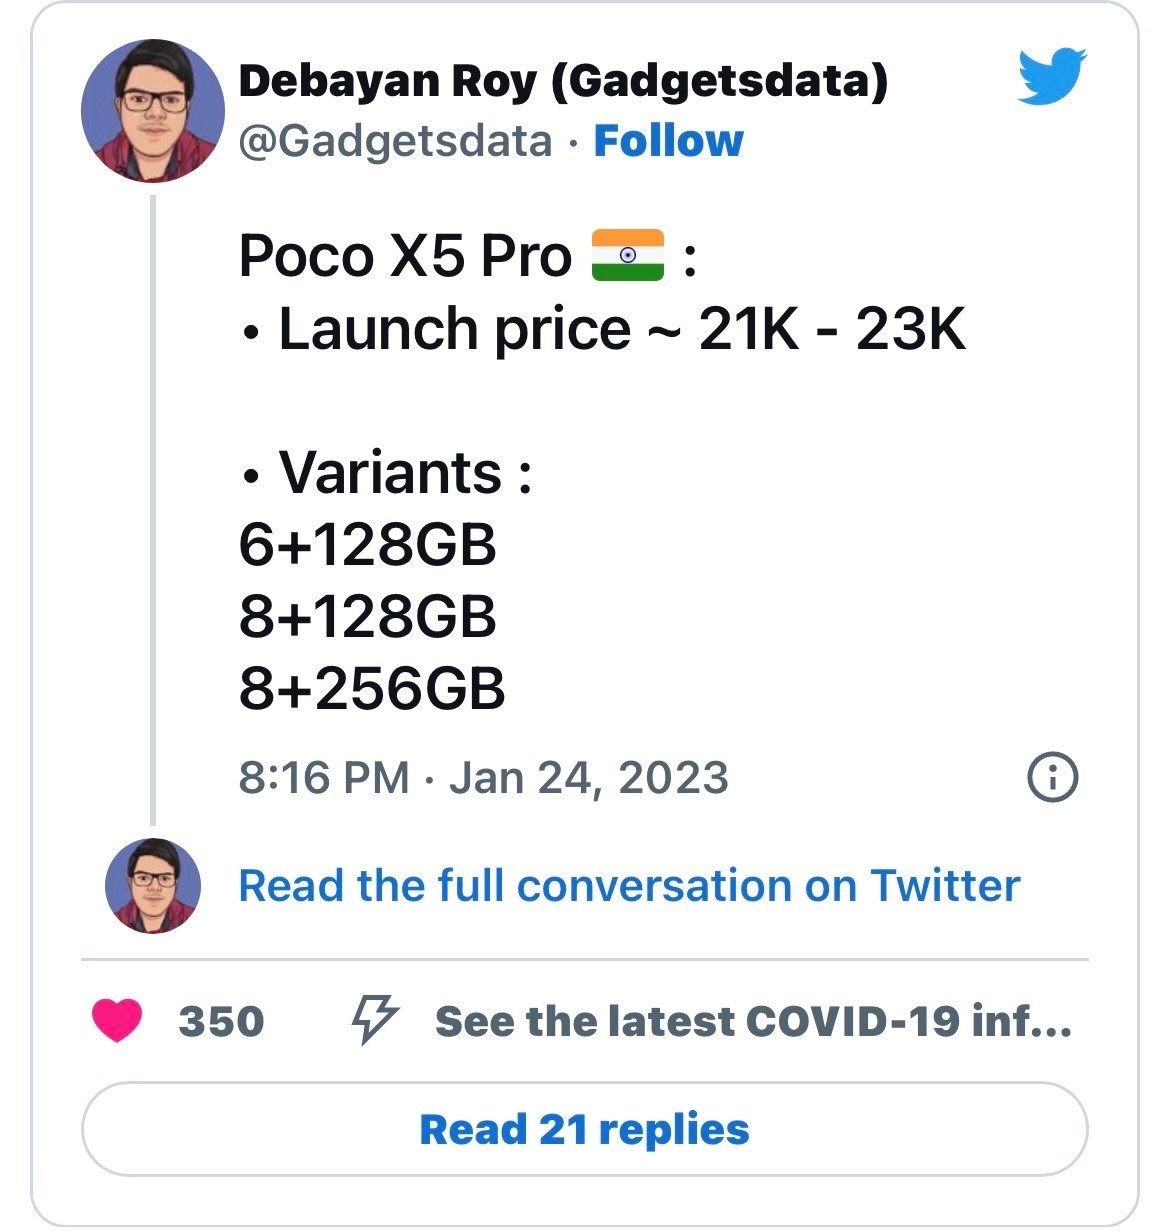 POCO X5 Pro Price